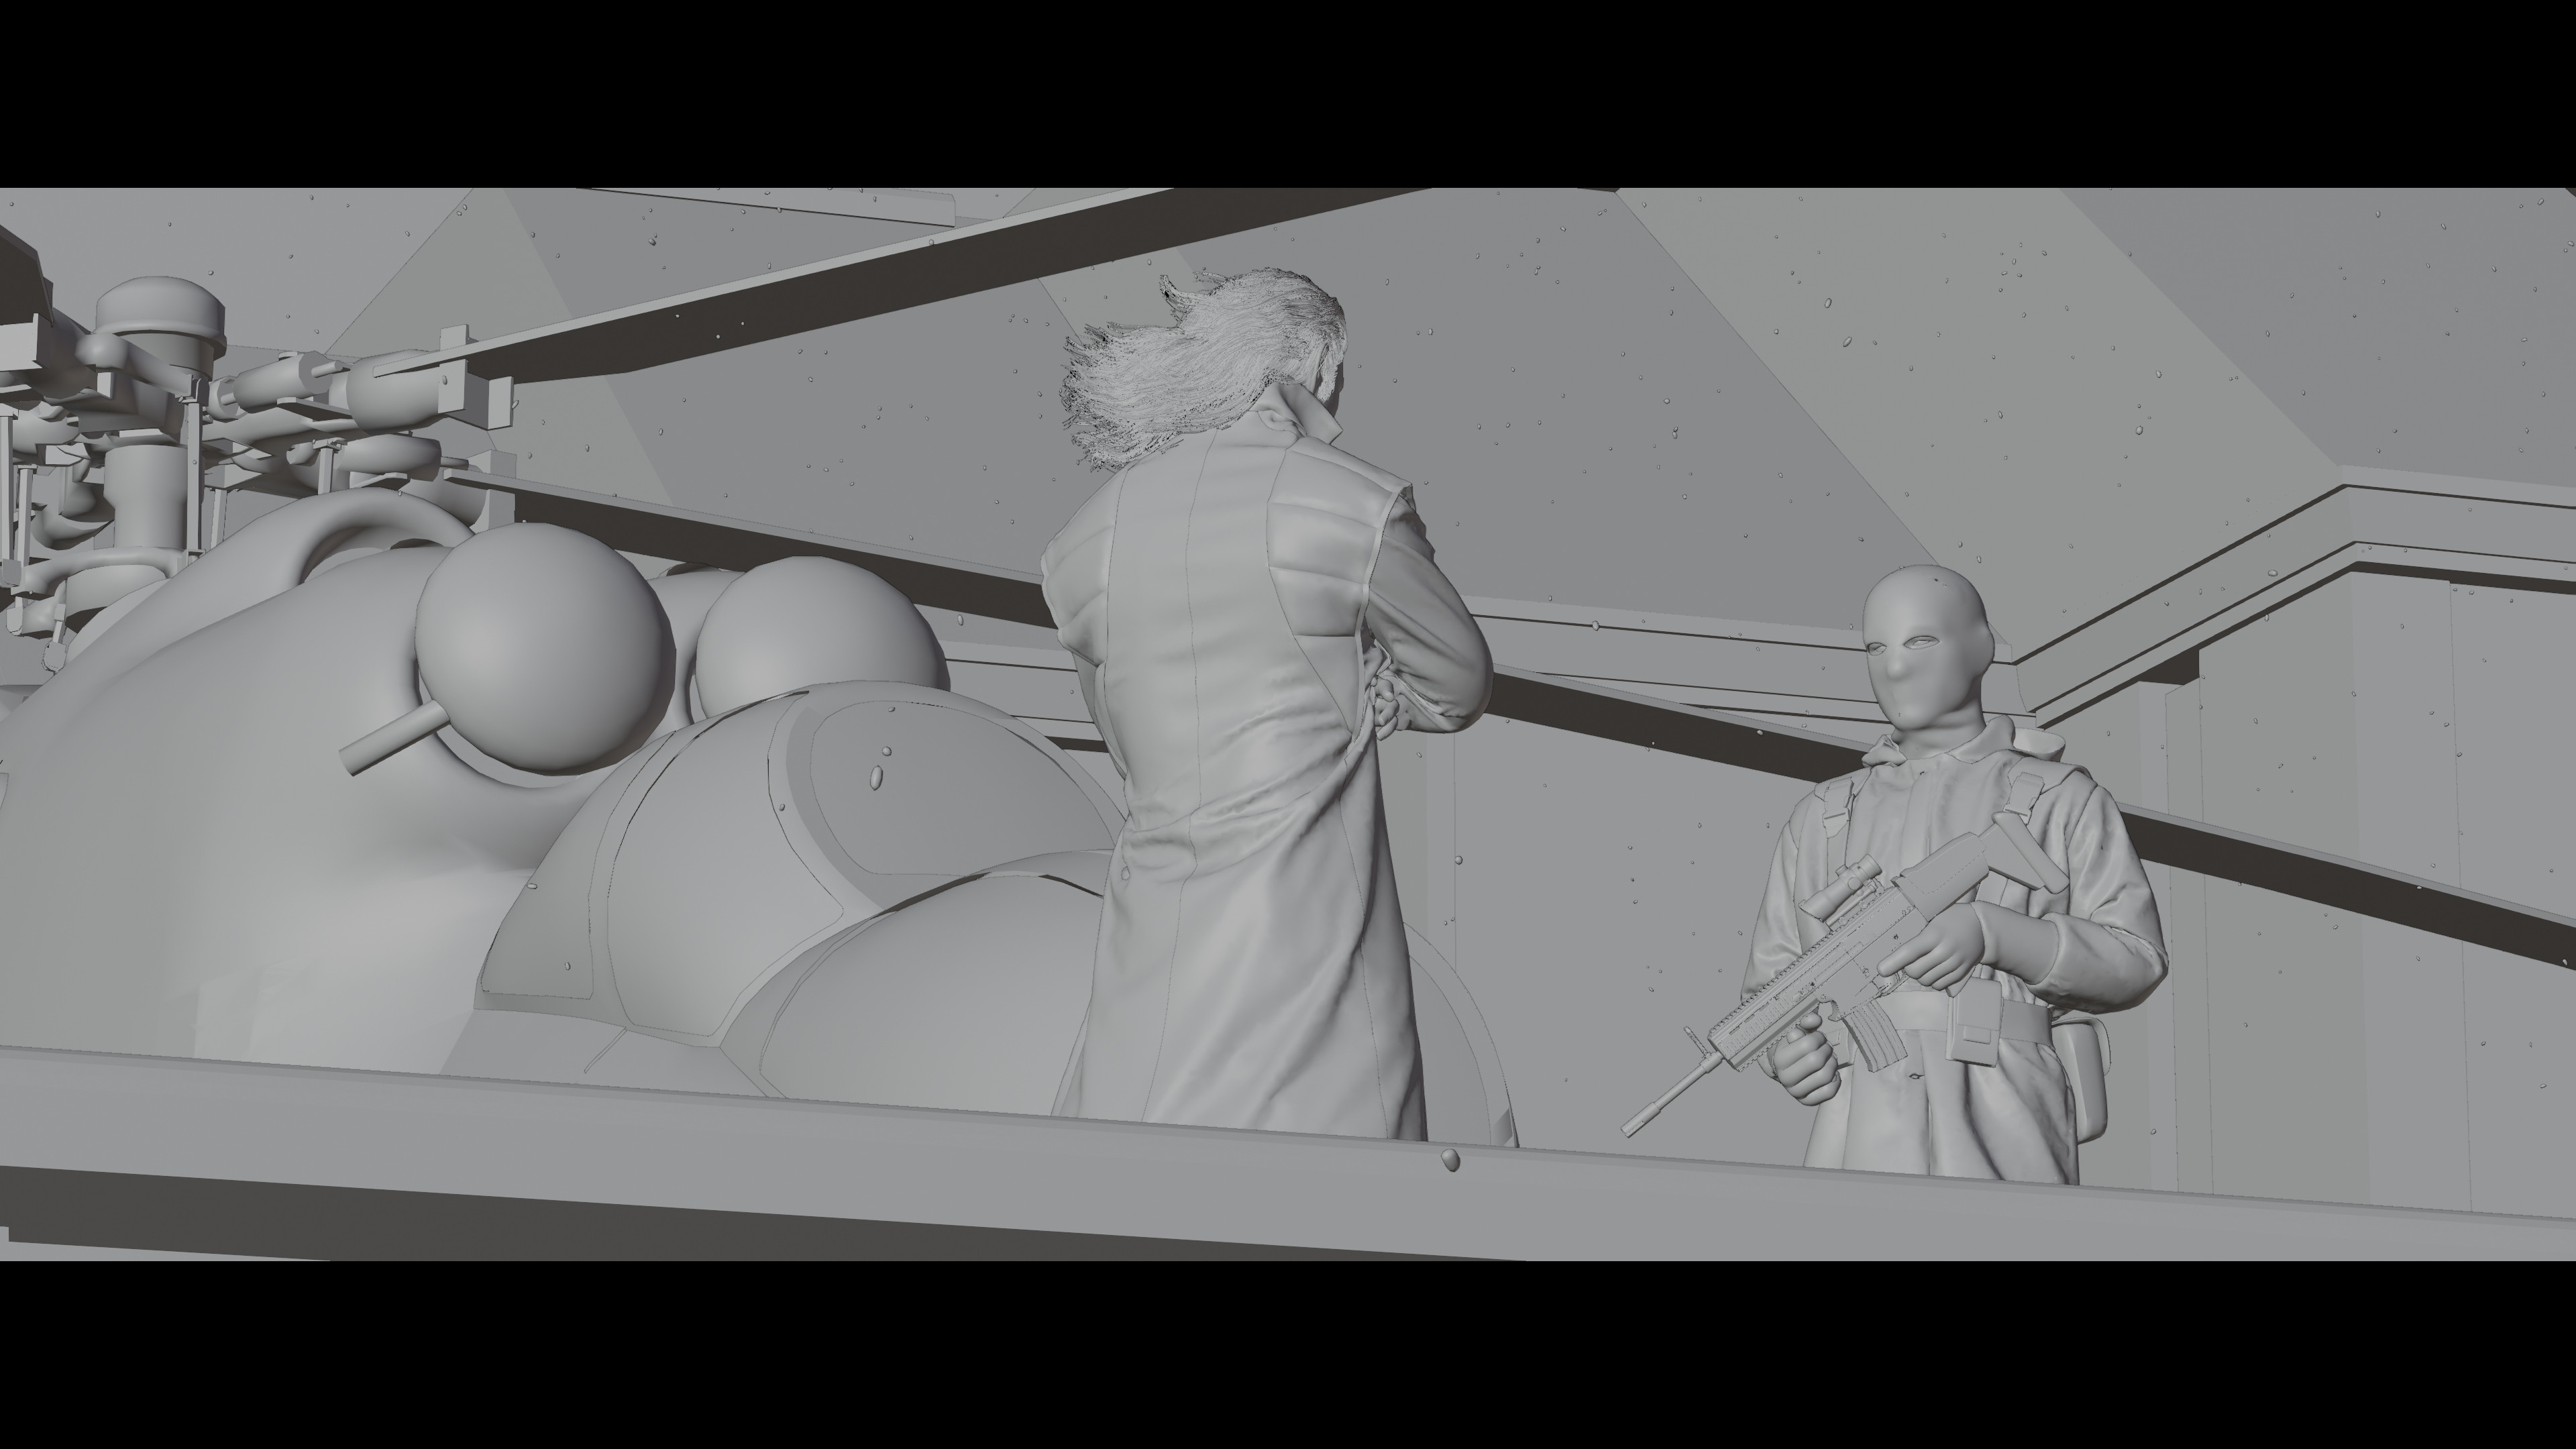 ArtStation - Metal Gear Solid- Docks Level - 3D Fan Art